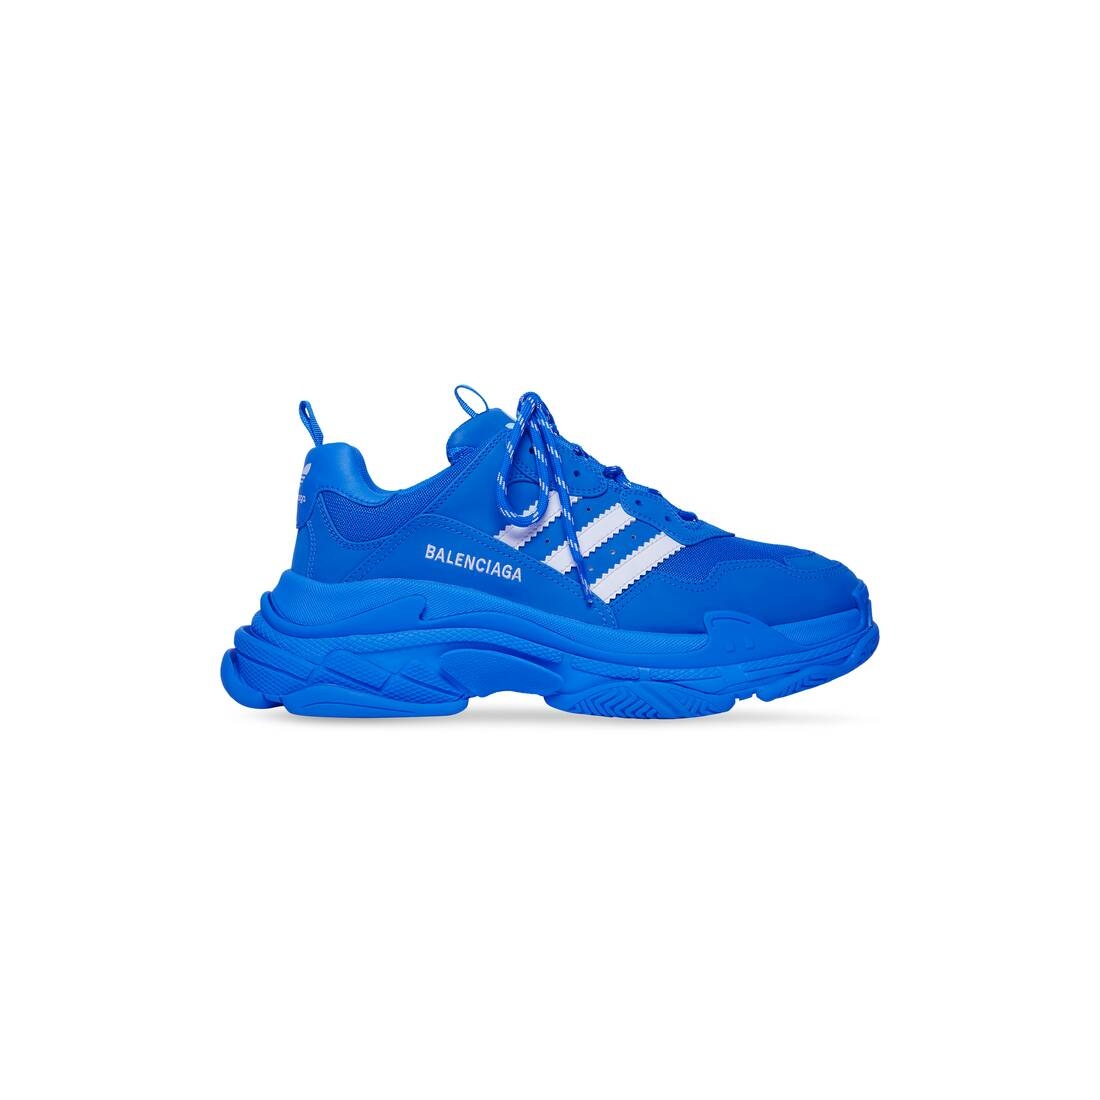 Men's Balenciaga / Adidas Triple S Sneaker in Blue - 1